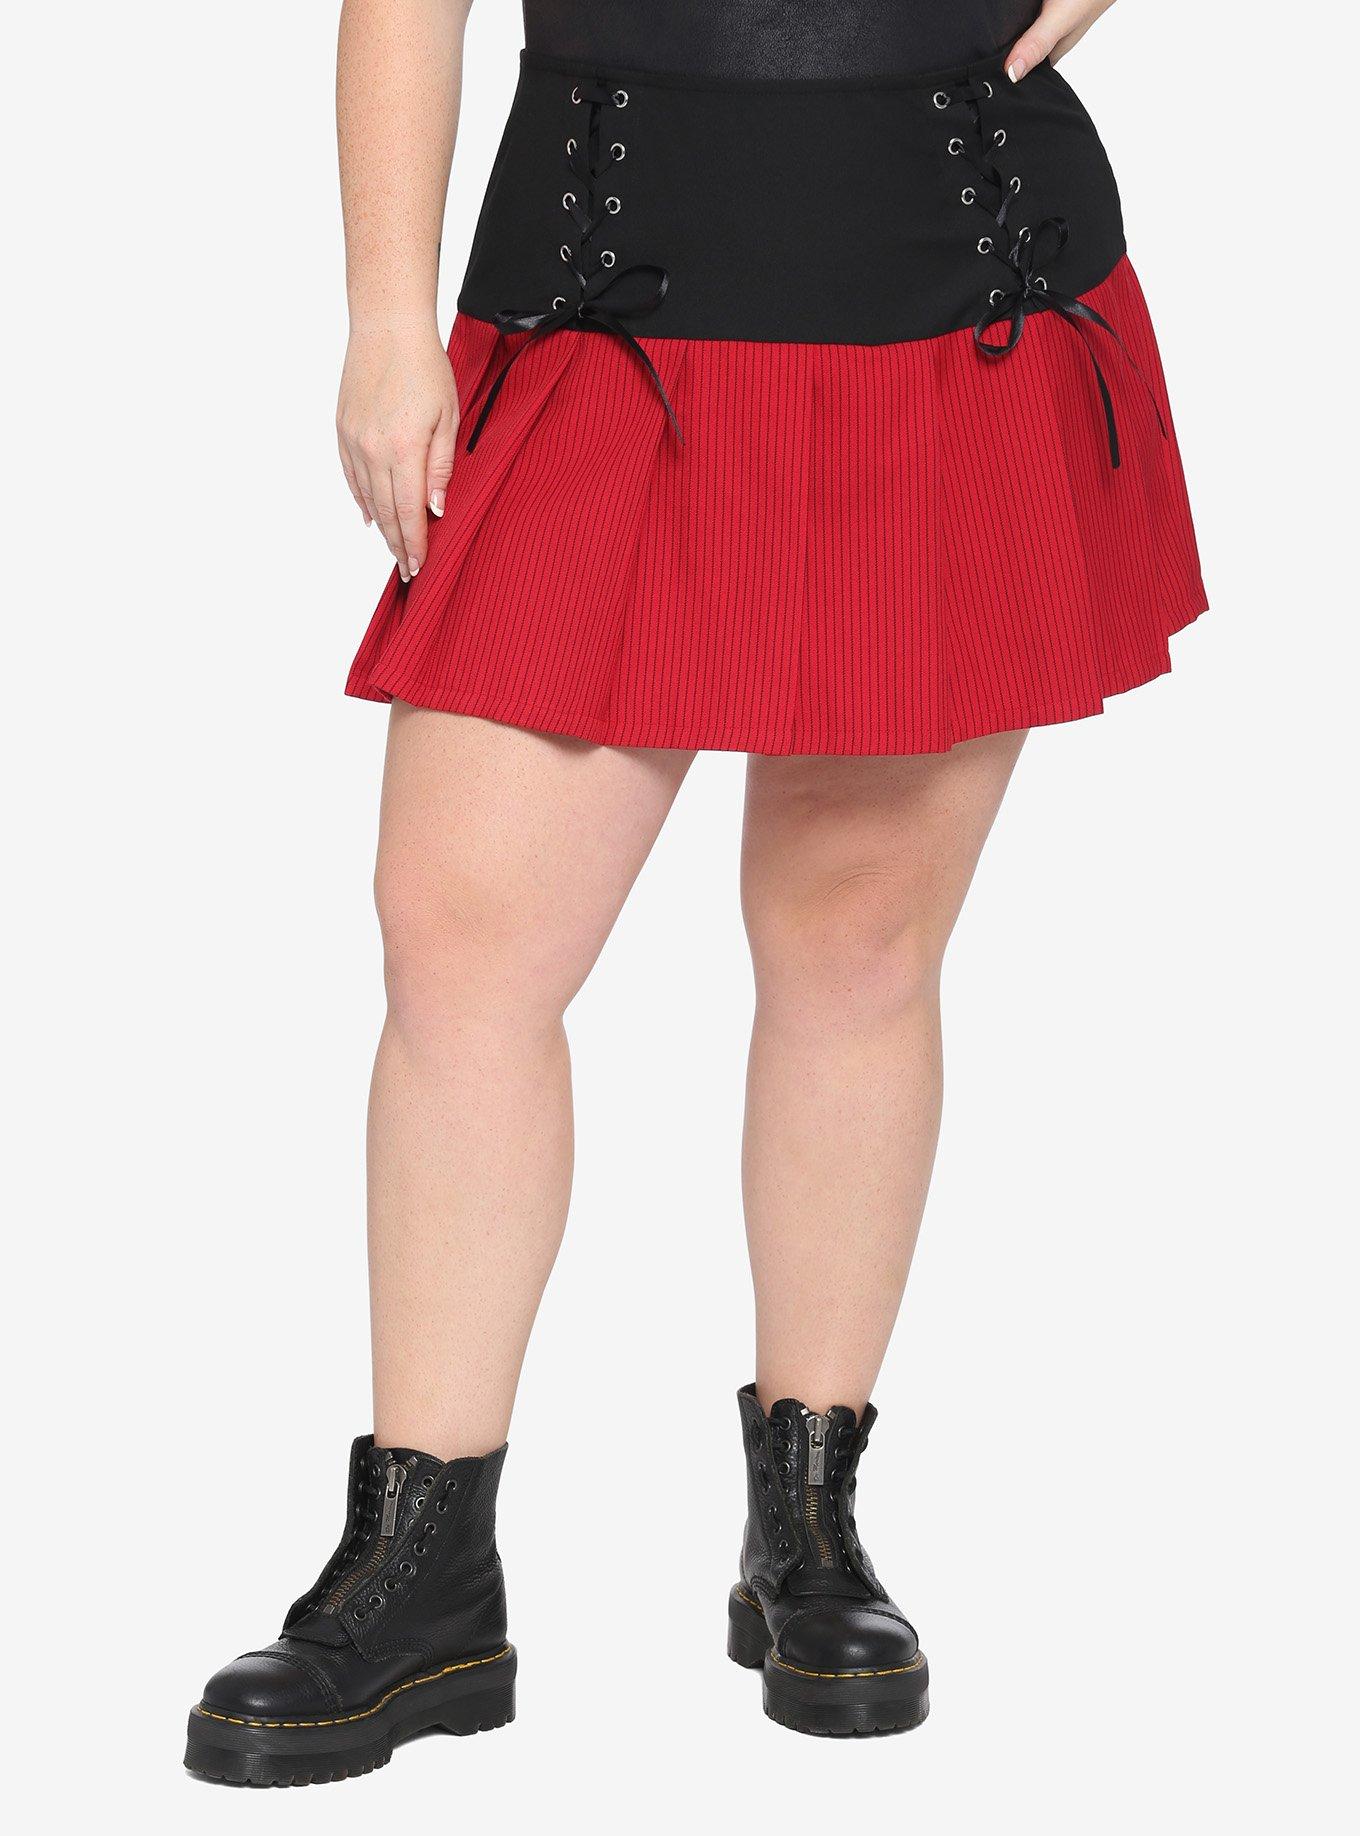 Black & Red Lace-Up Yoke Skirt Plus Size, MULTI, hi-res